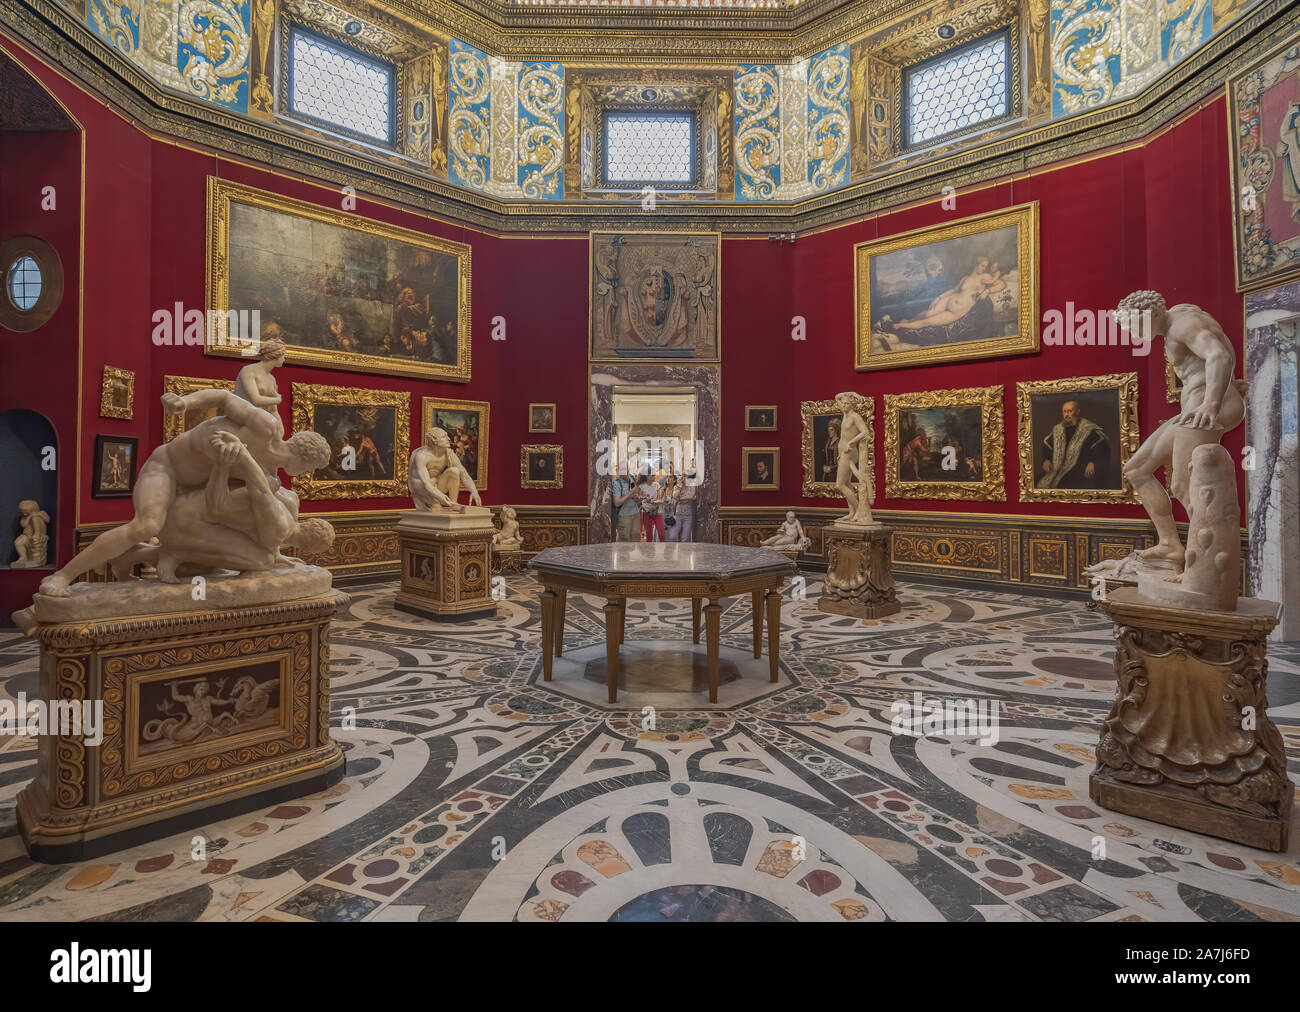 Florenz, Italien - 25 August: Interieur und Künste der Uffizien Art Museum in der Nähe der Piazza della Signoria. Stockfoto